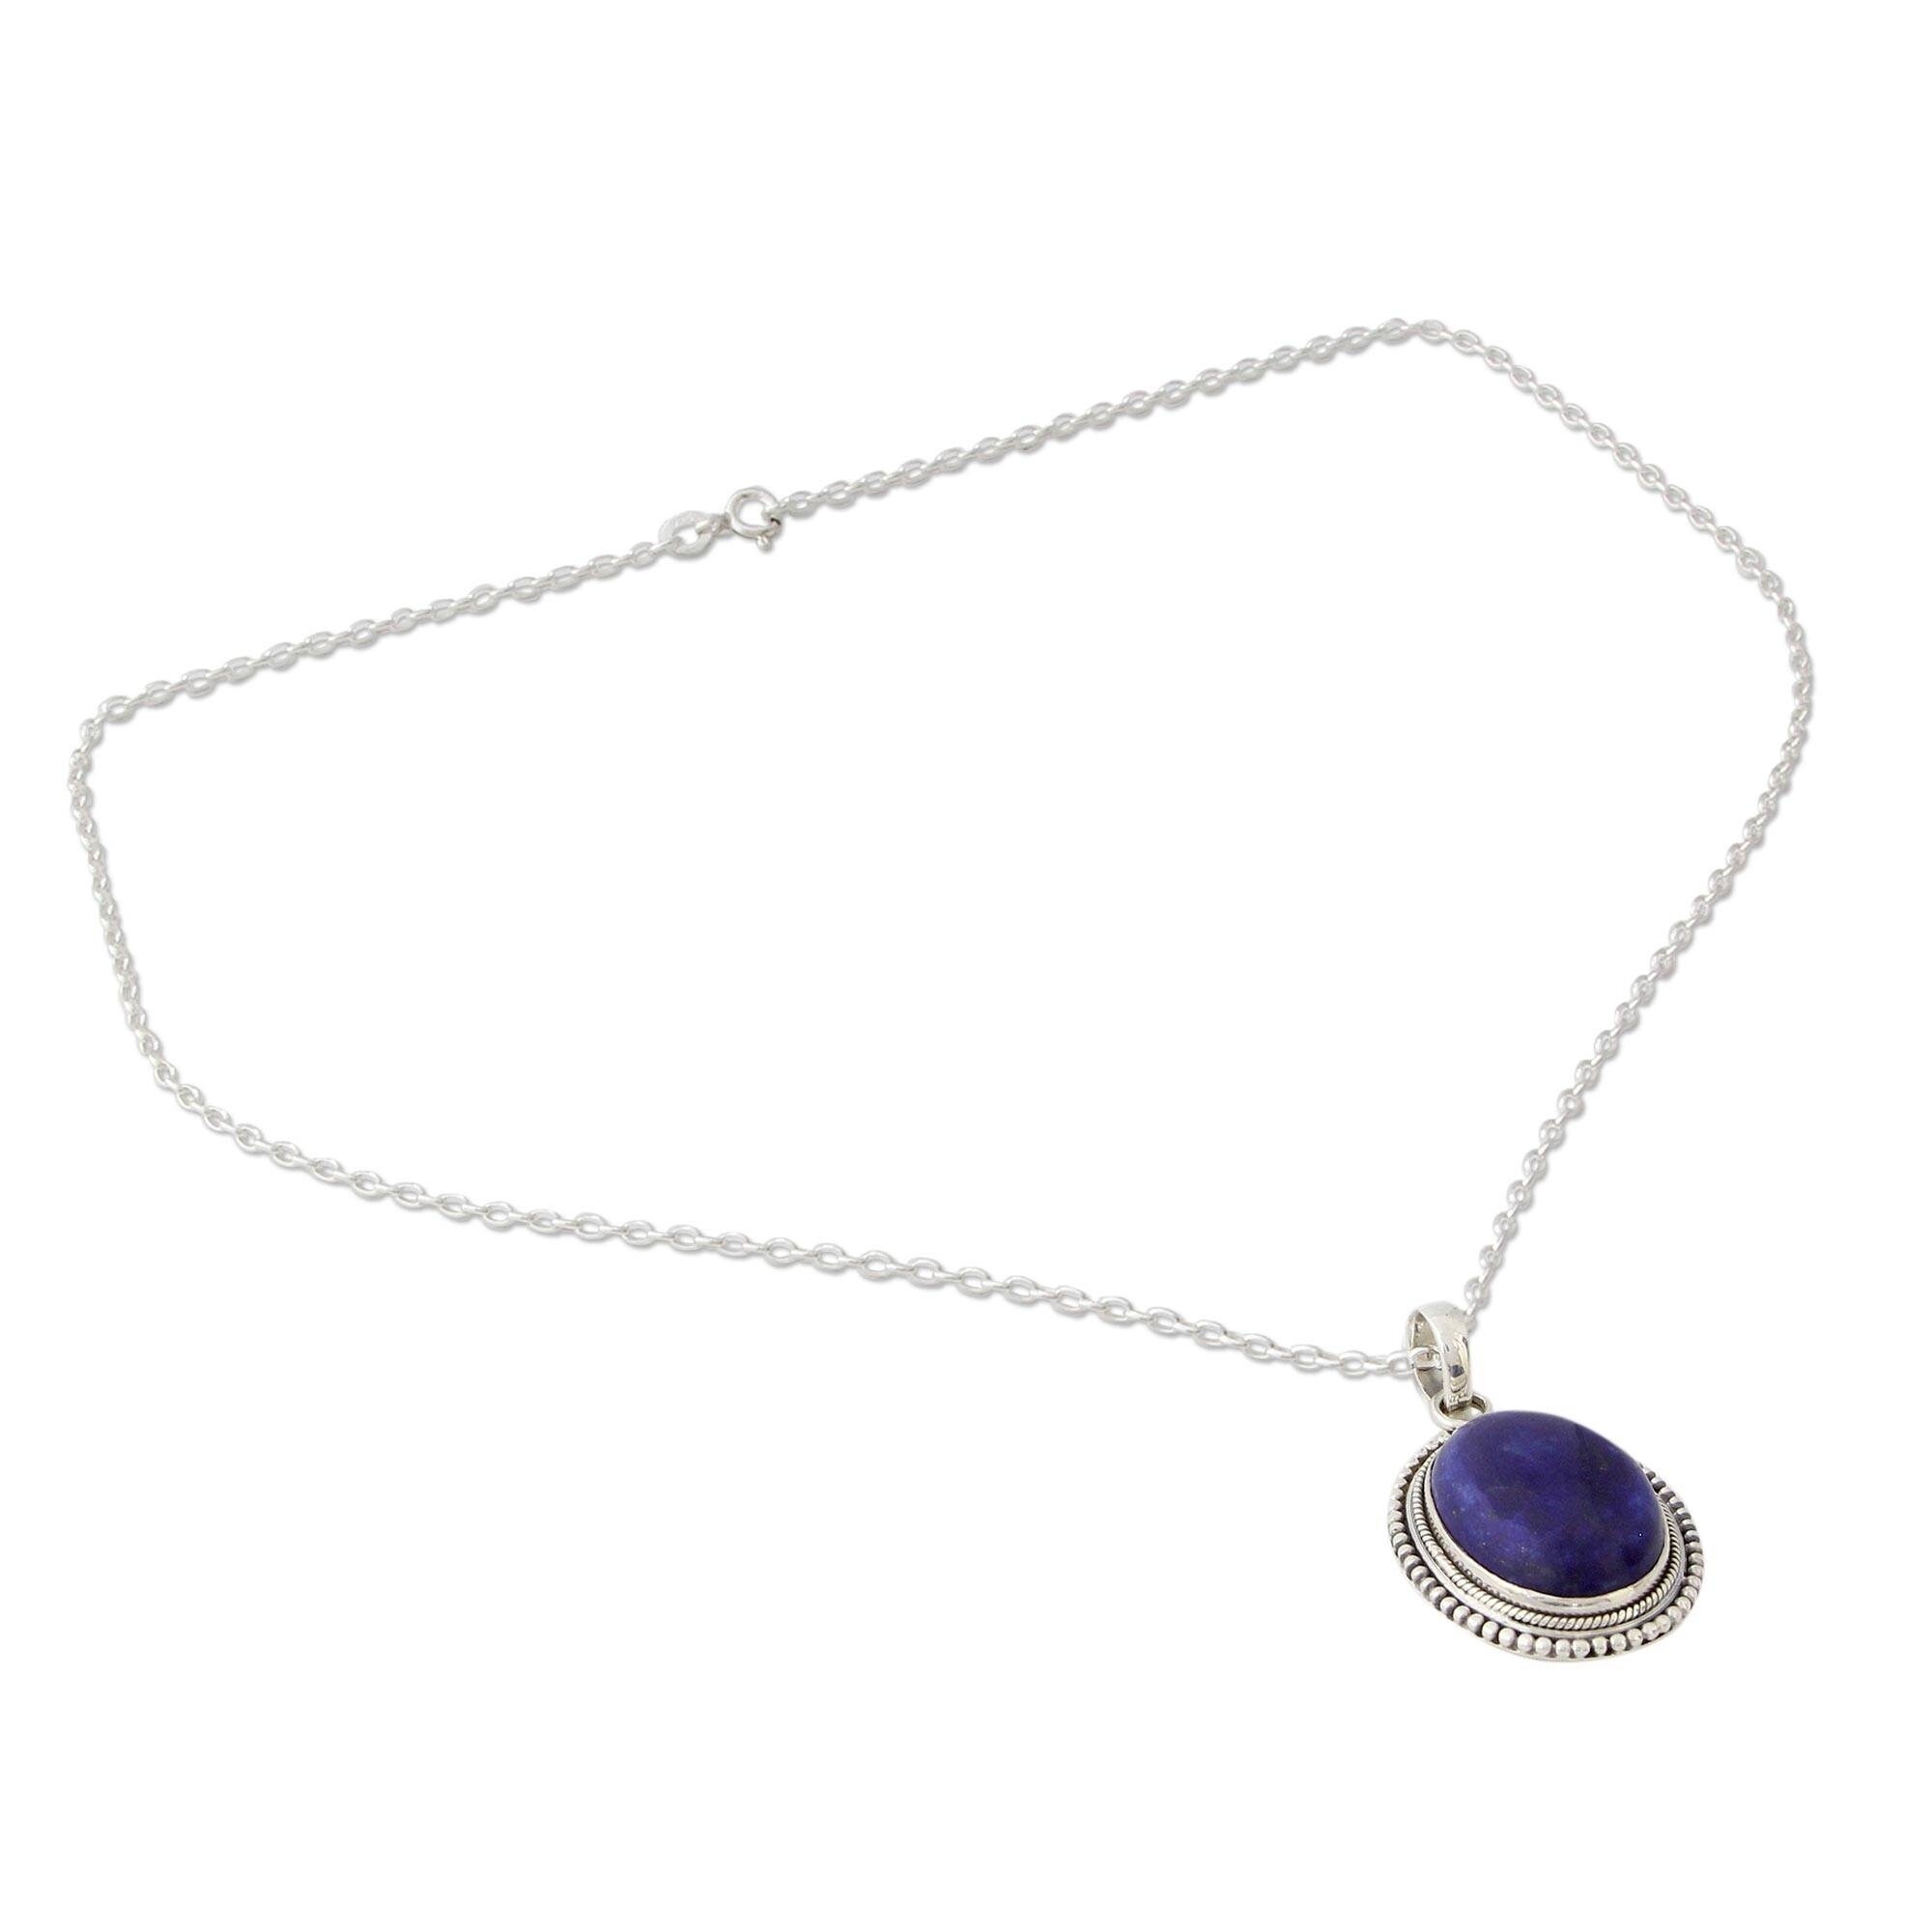 lapis lazuli jewelry necklaces